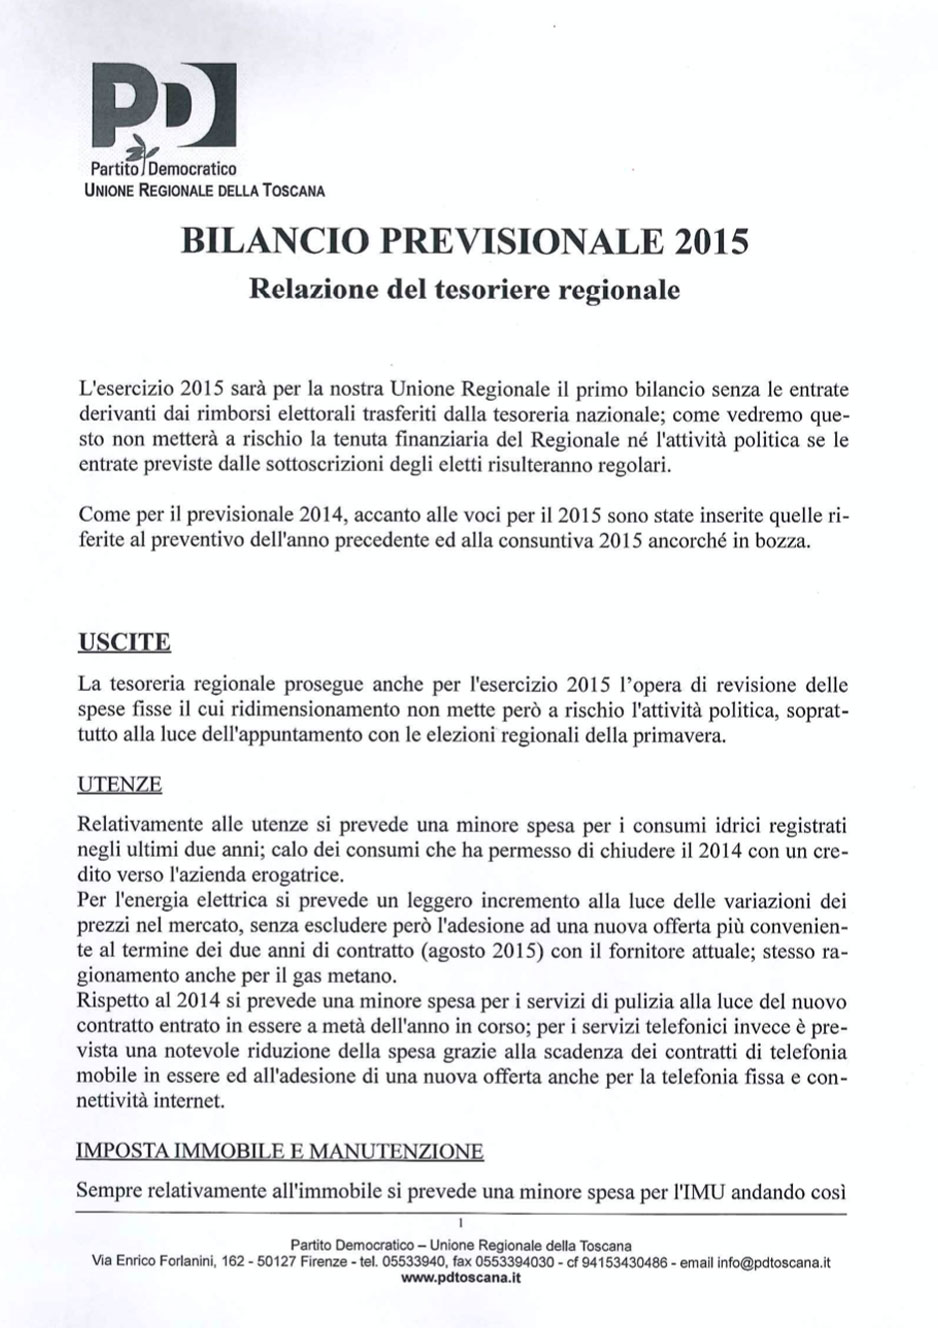 Scarica il Bilancio previsionale PD Toscana 2015 